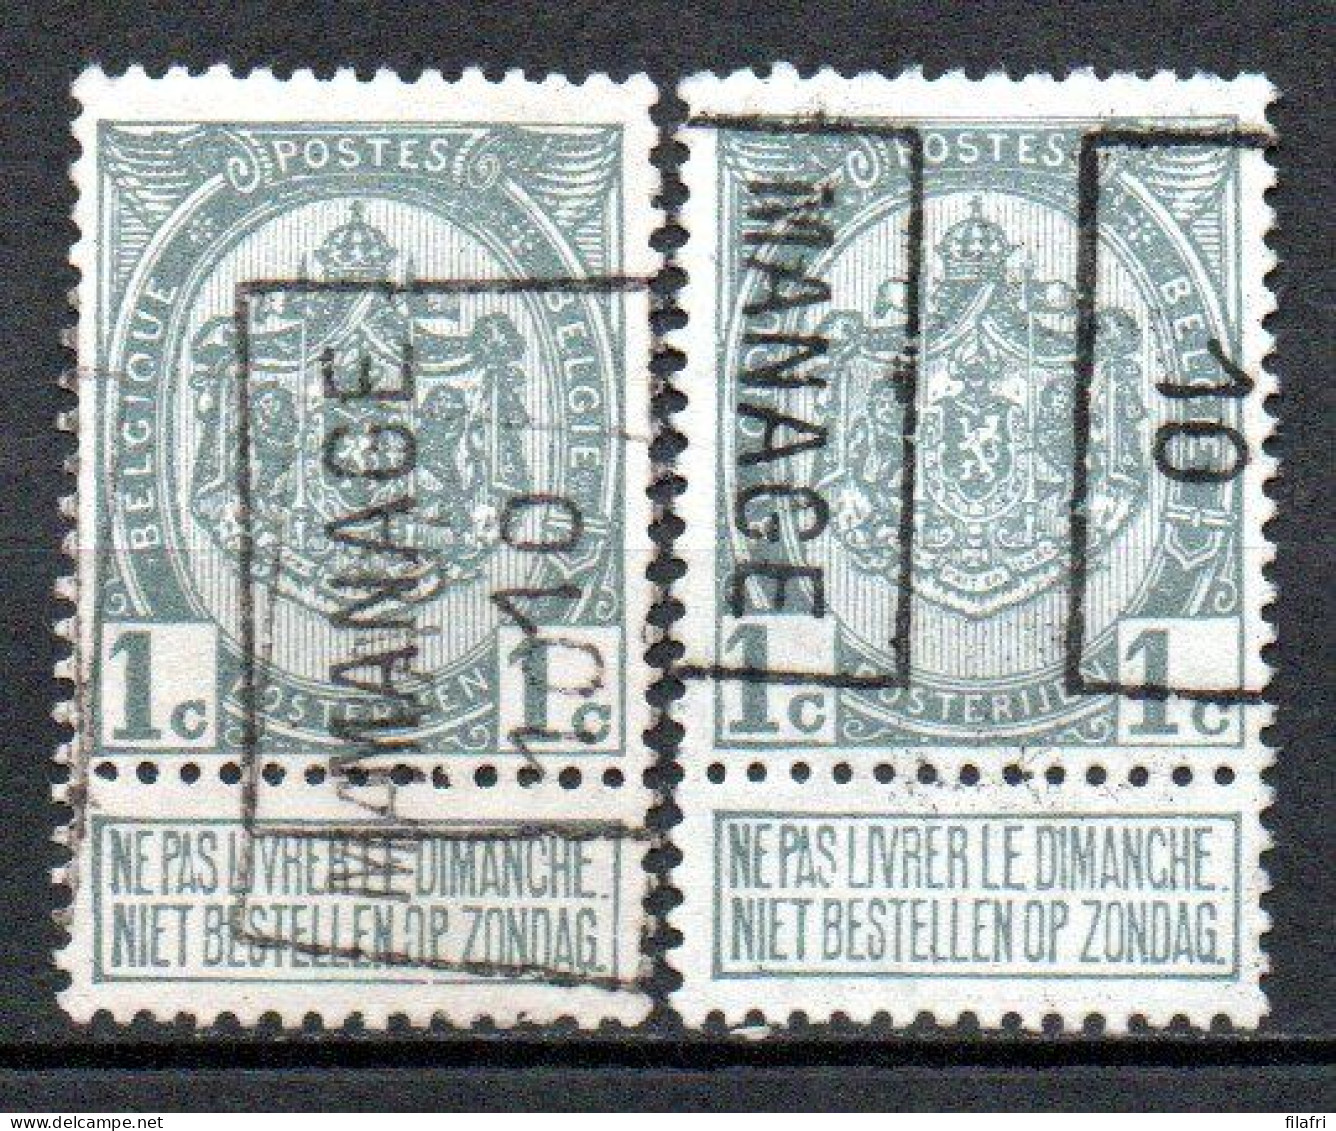 1464 Voorafstempeling Op Nr 81 - MANAGE 10 - Positie A & B (dubbeldruk) - Rollenmarken 1910-19